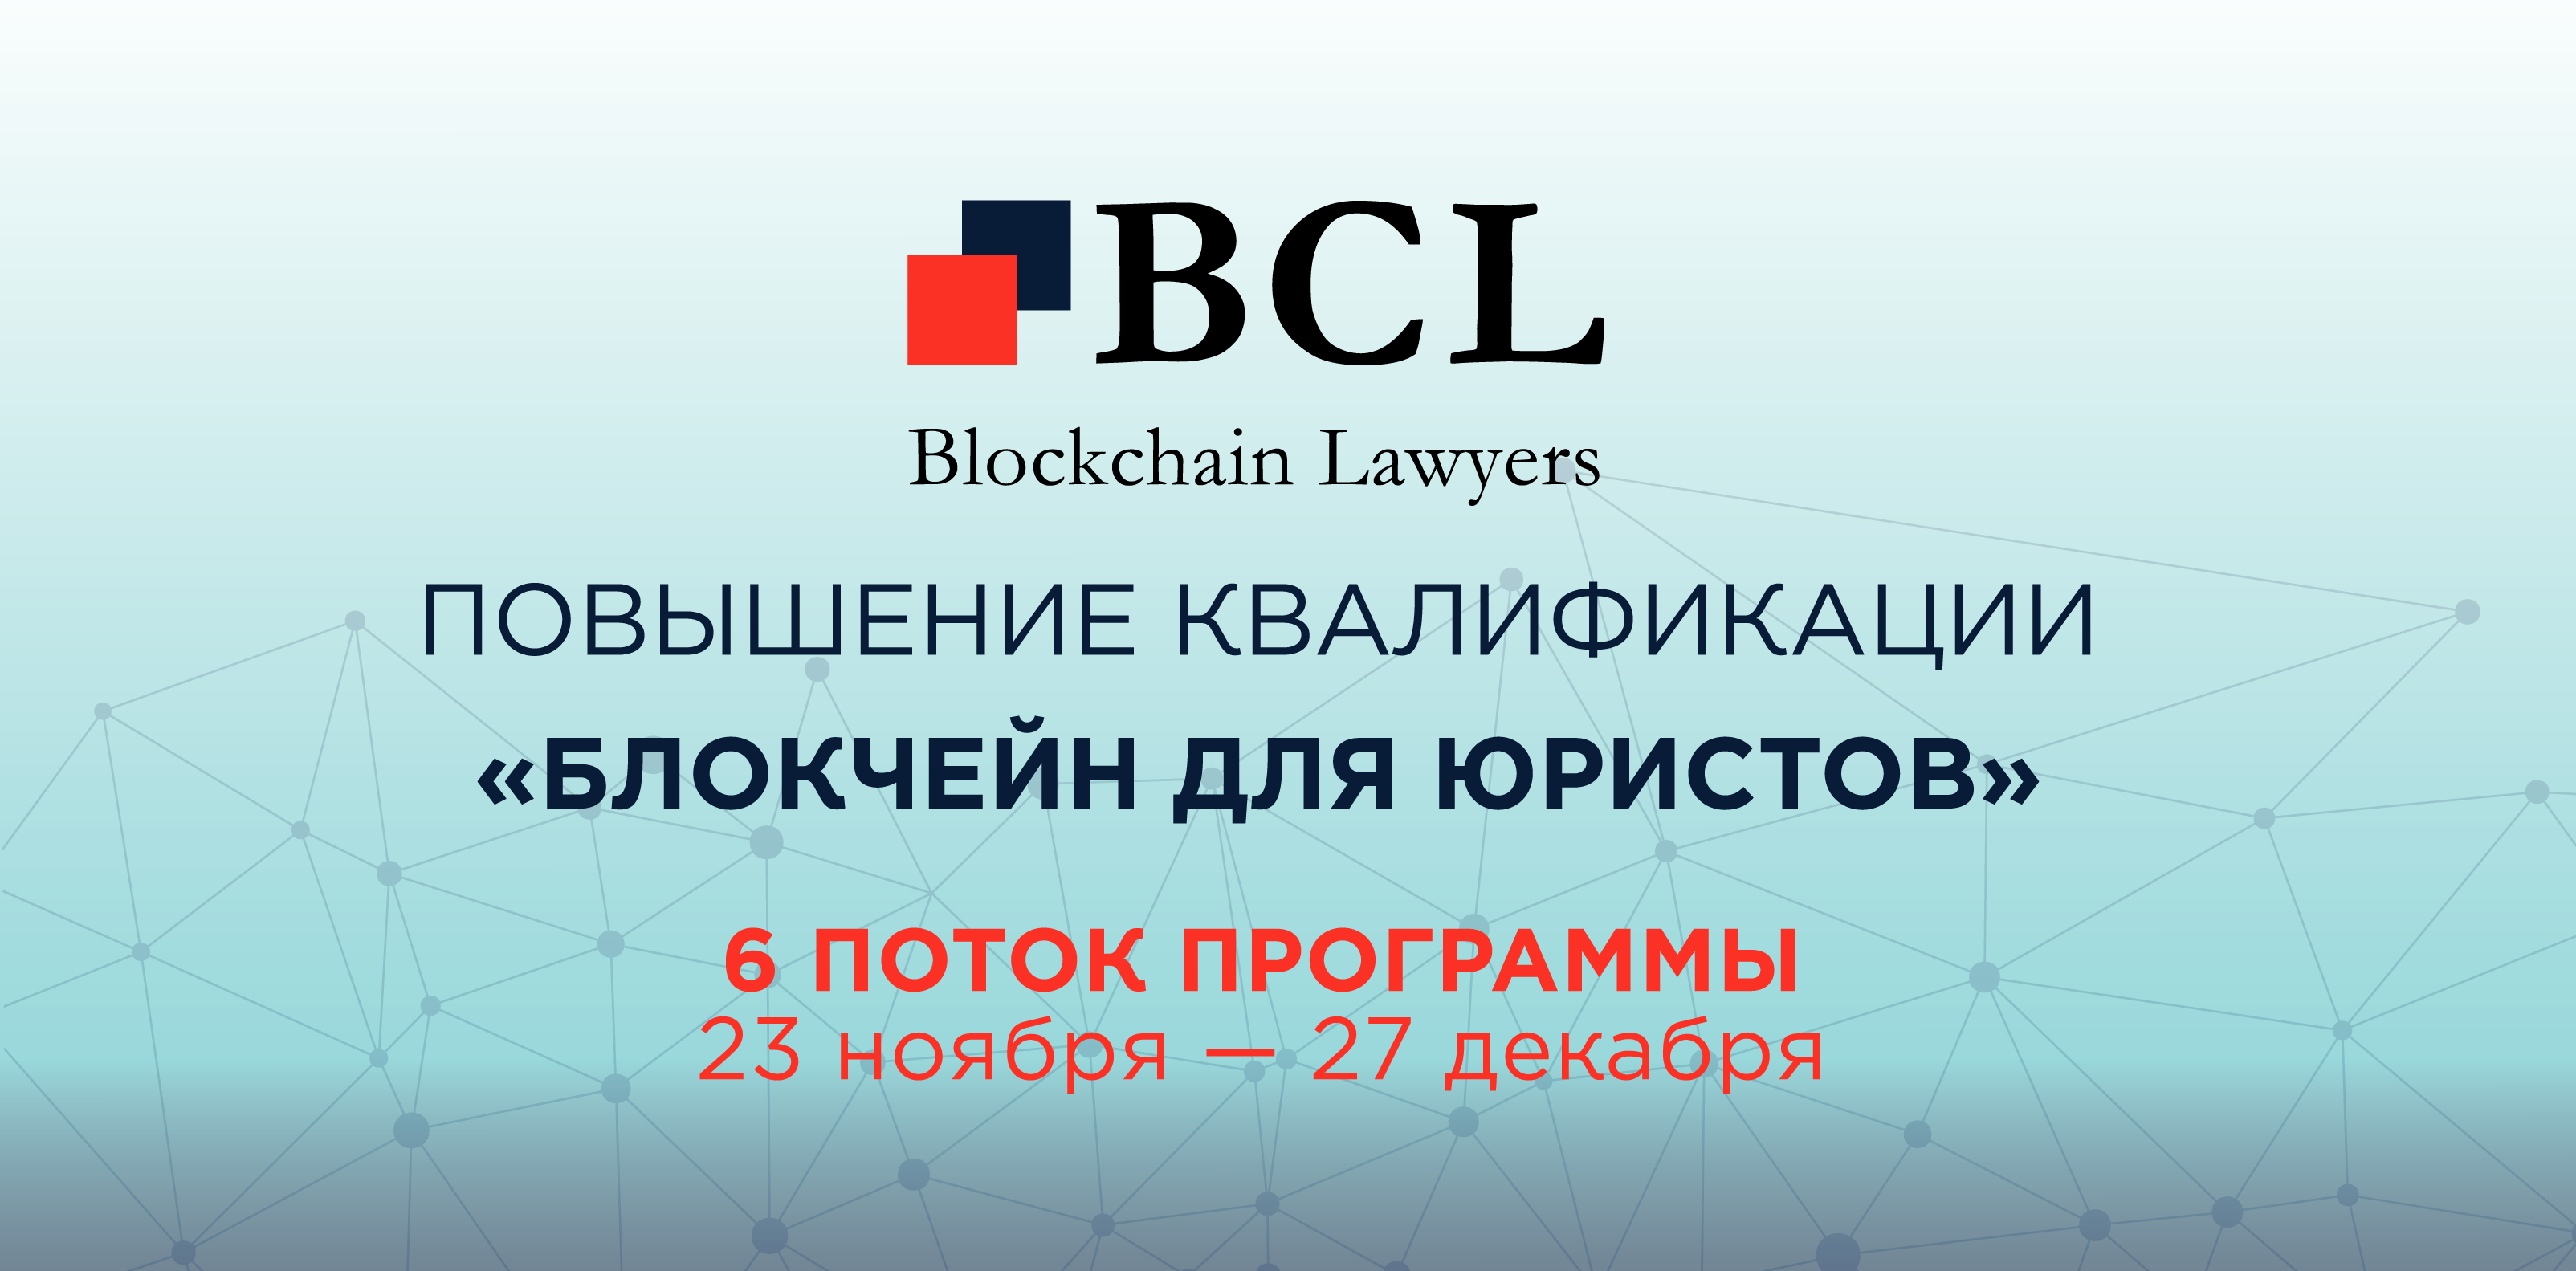 23 ноября Blockchain Lawyers начинает обучать юристов и инвесторов